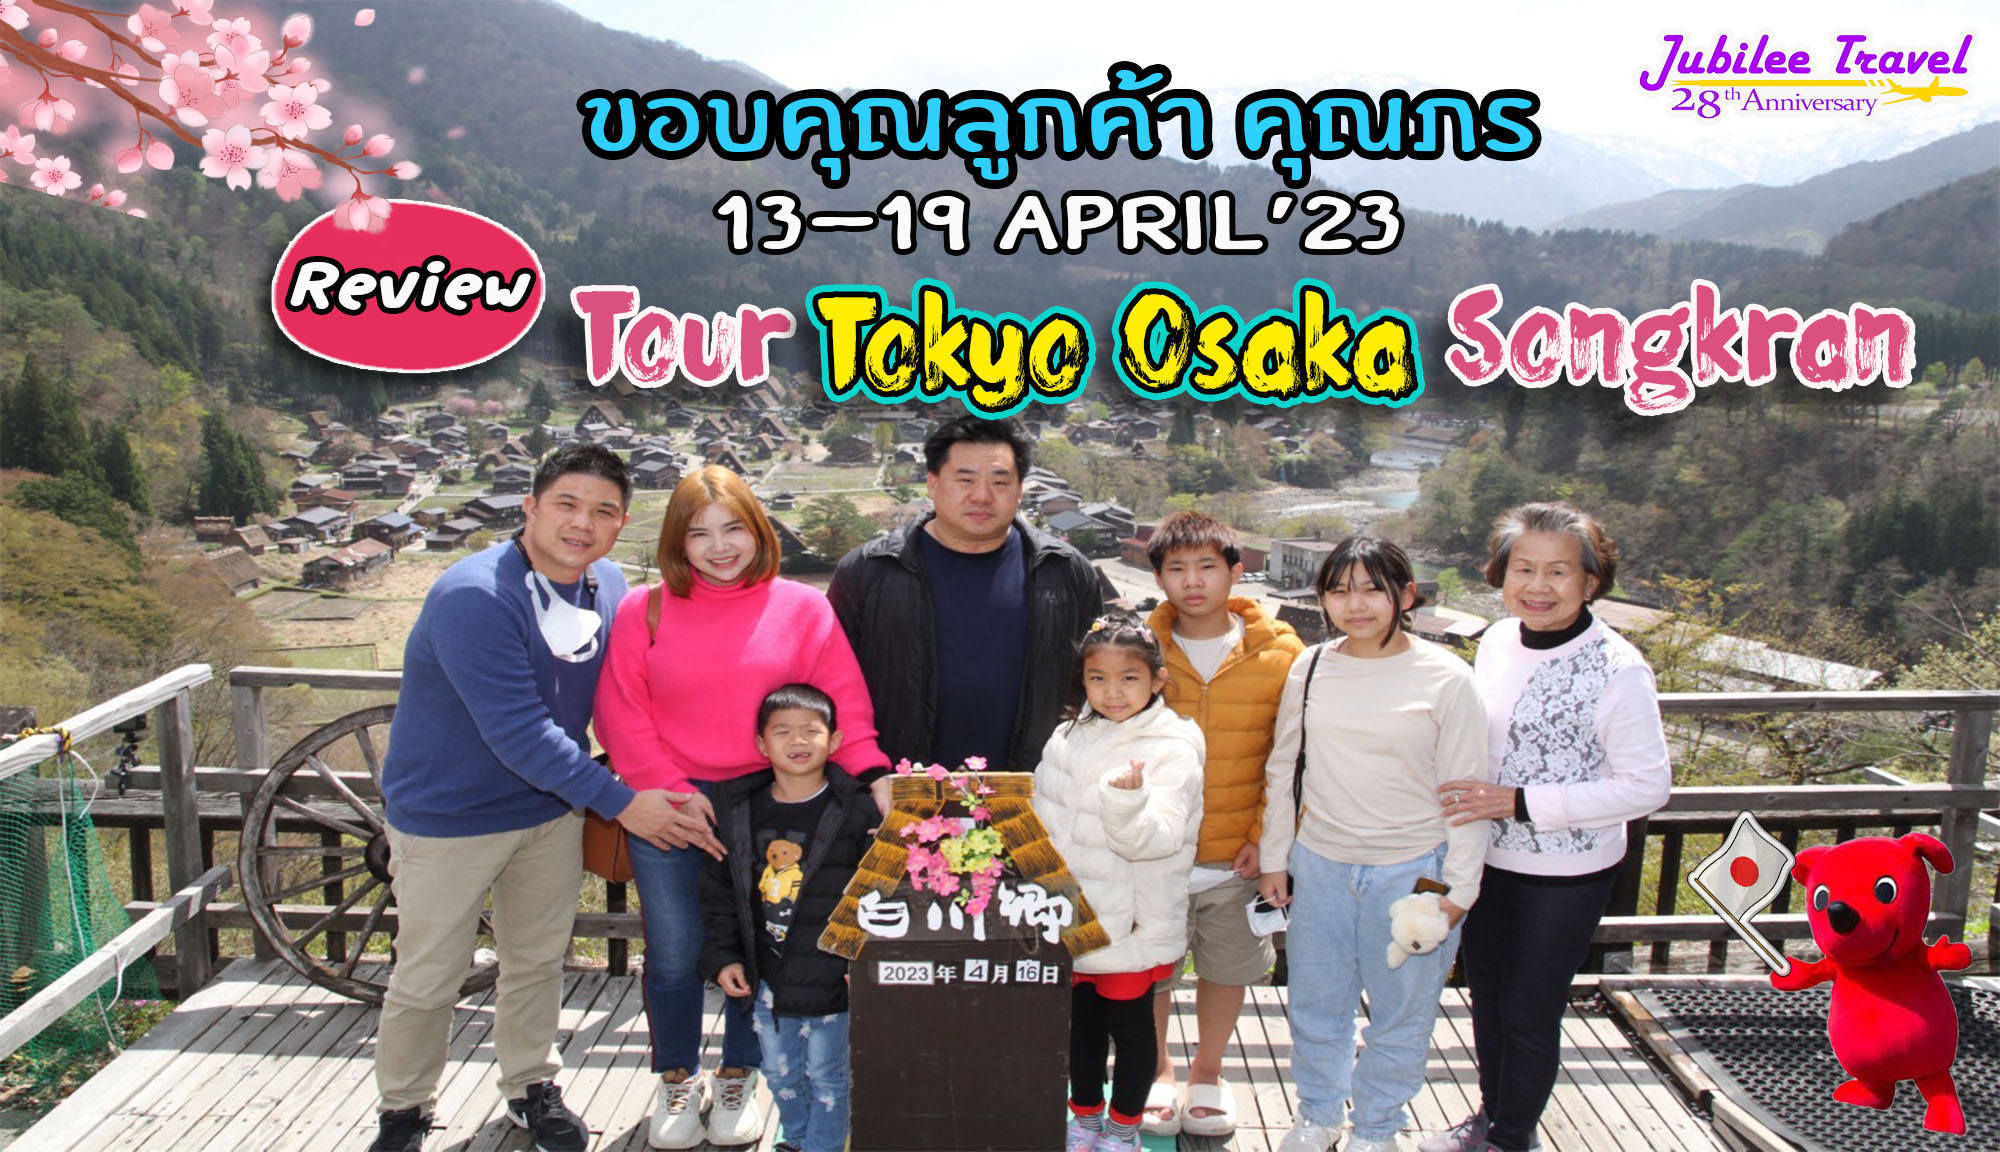 รีวิว ขอบคุณคุณลูกค้า Tour Tokyo Osaka Songkran 13-19 April’23 คุณภร